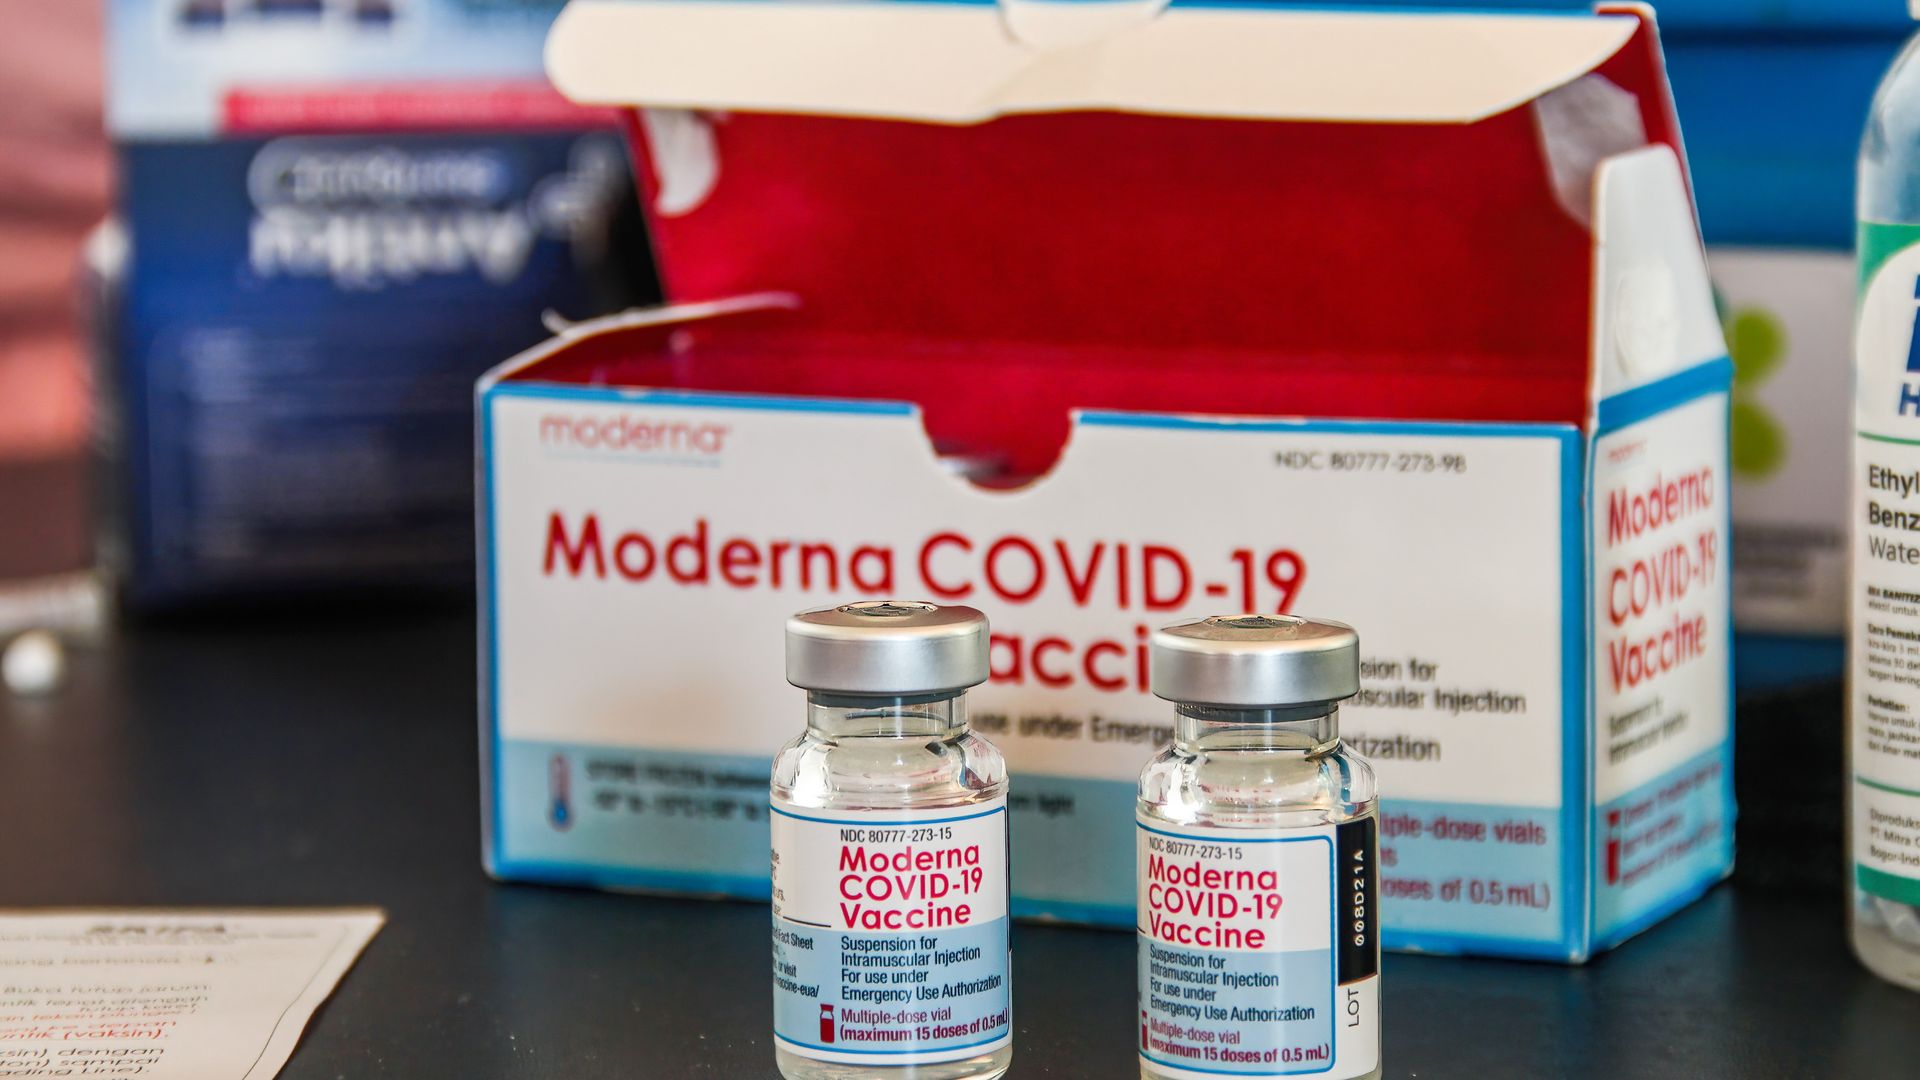 Bottles of the Moderna COVID-19 vaccine